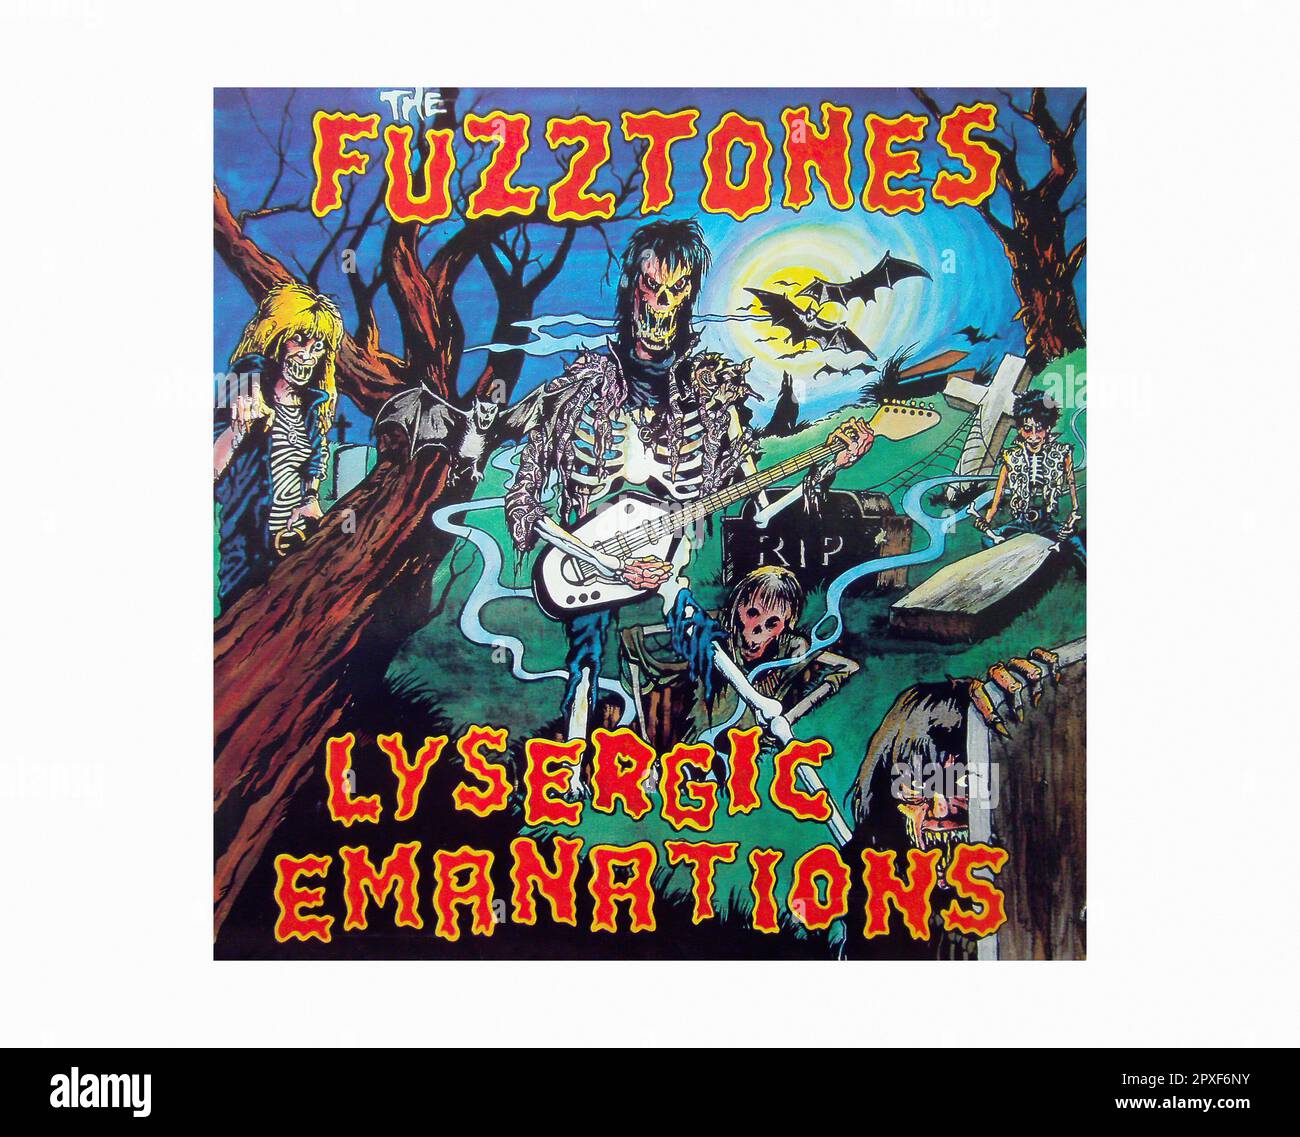 Fuzztones - Eémanations lysergiques [1985] - pochette Vintage Vinyl Record Banque D'Images